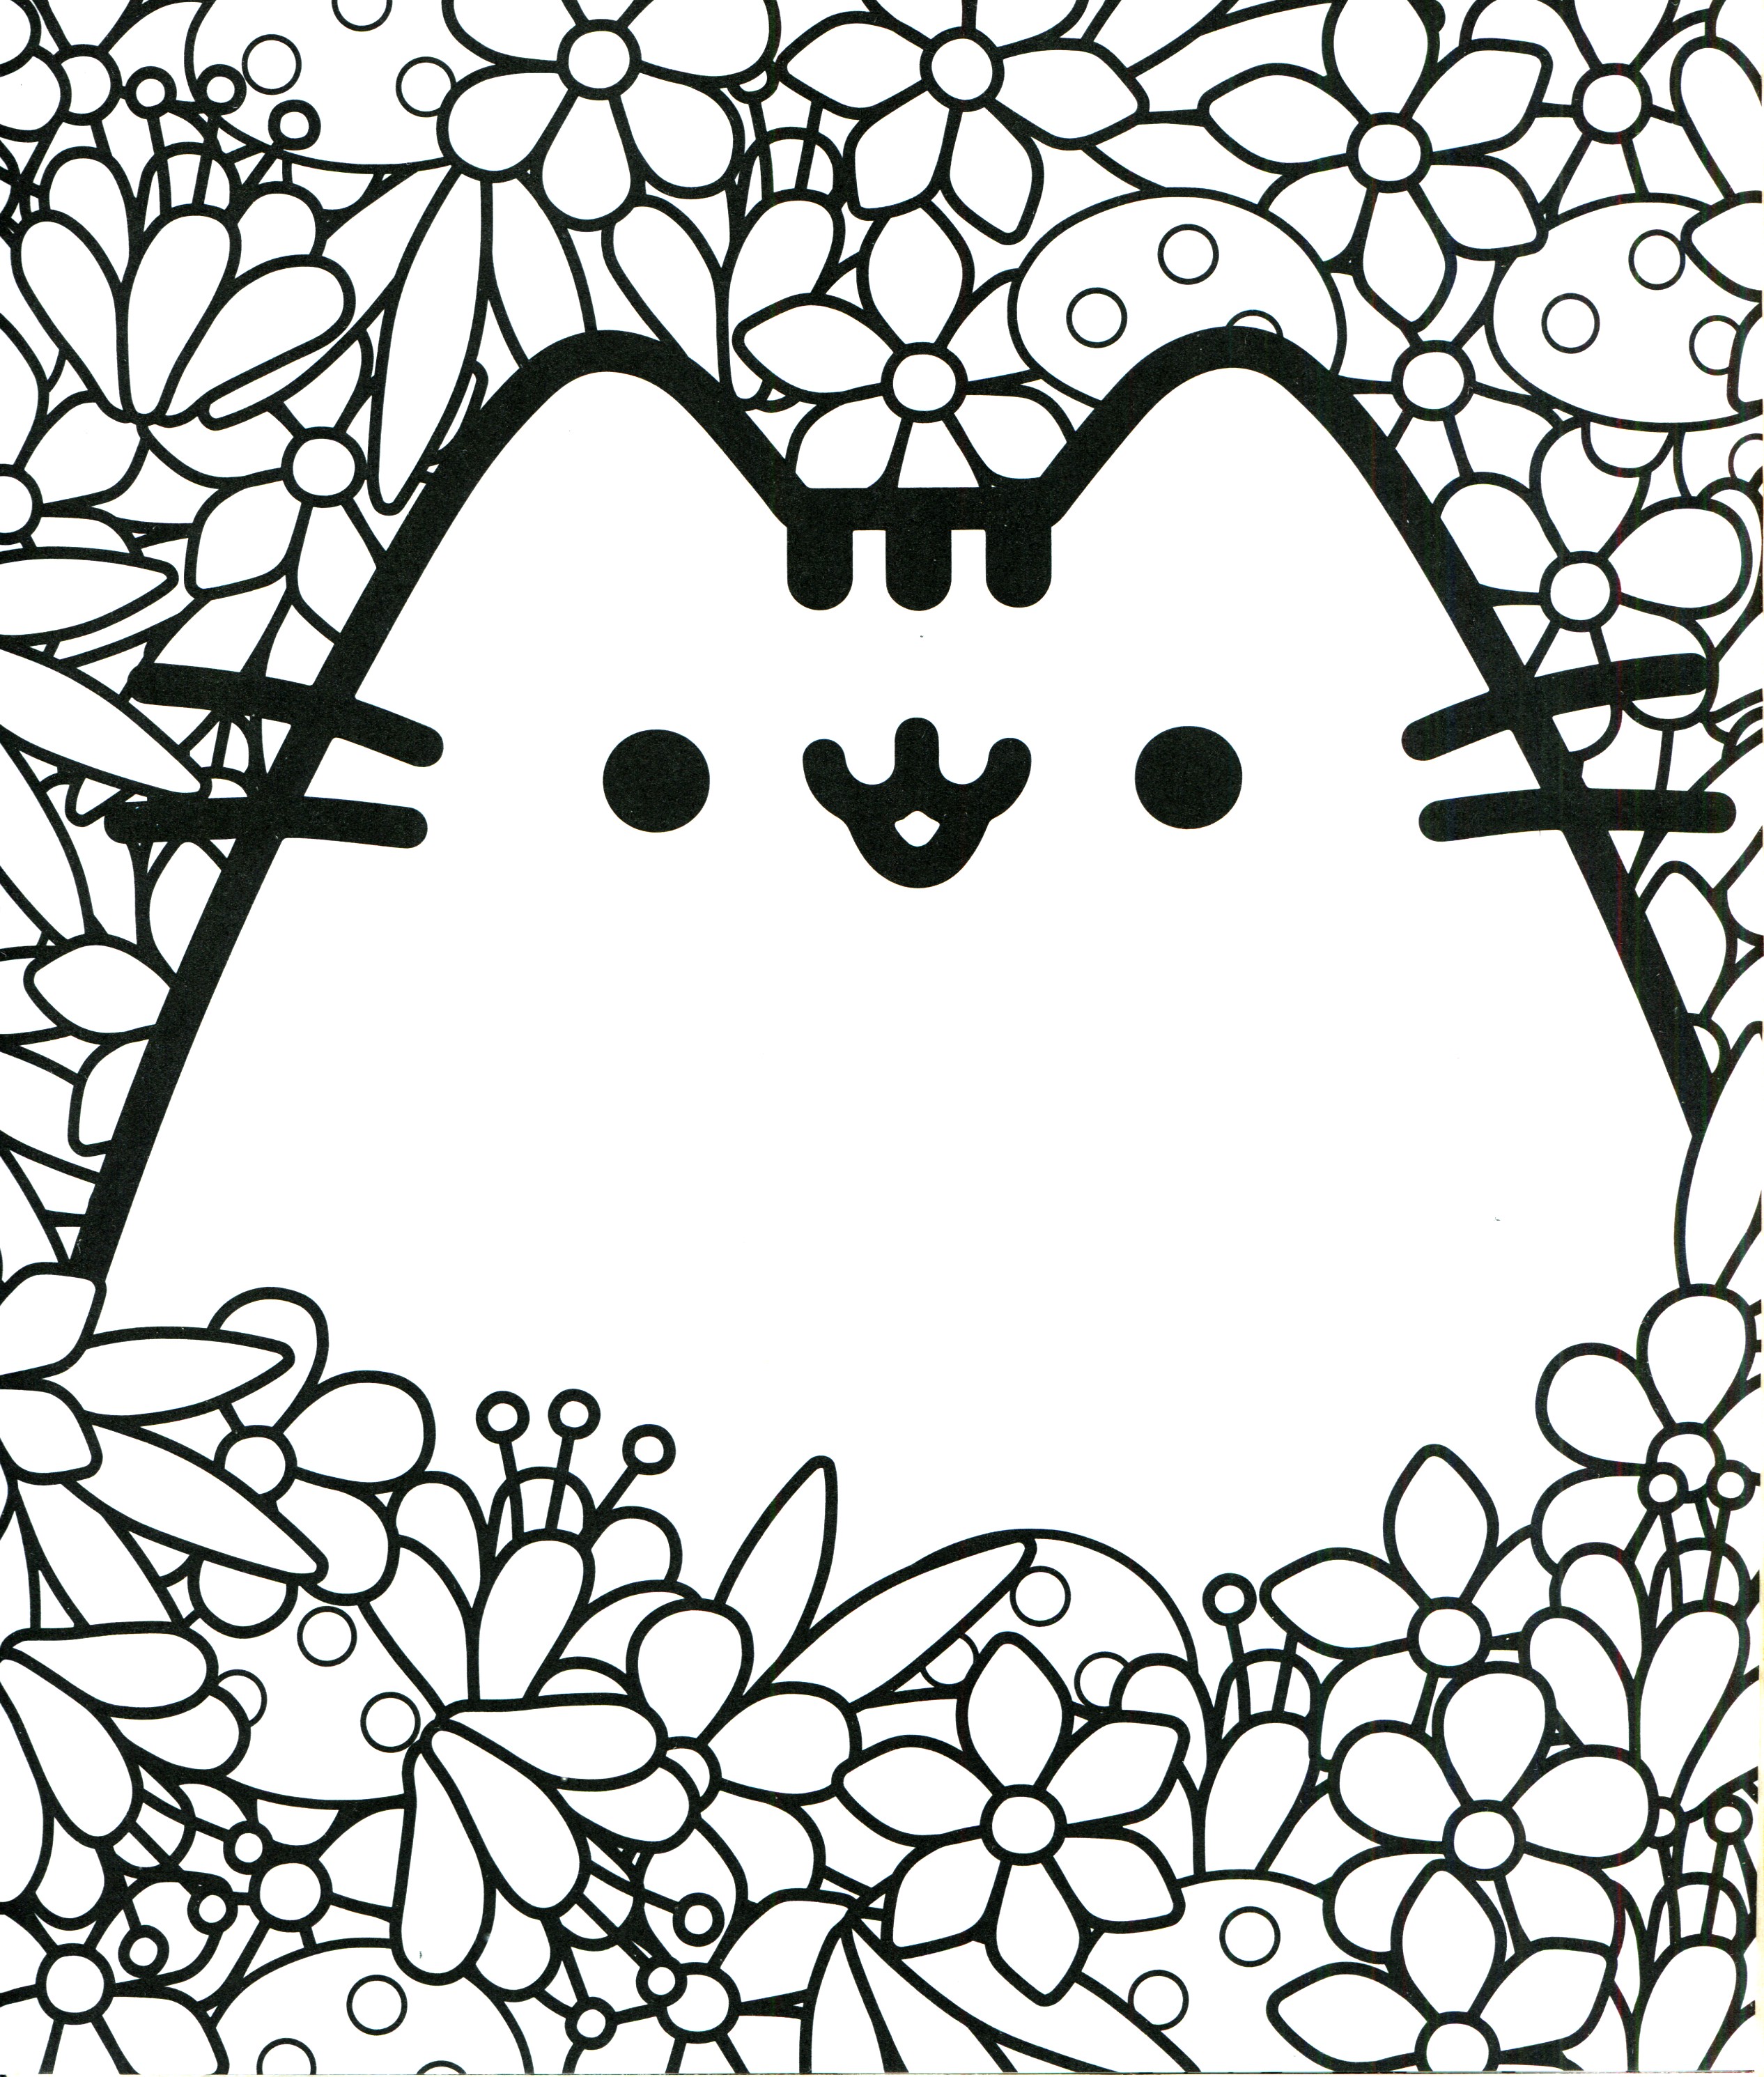 Pusheen 脾气暴躁的猫在 Booktsukihenshin Nyan 来自 Pusheen